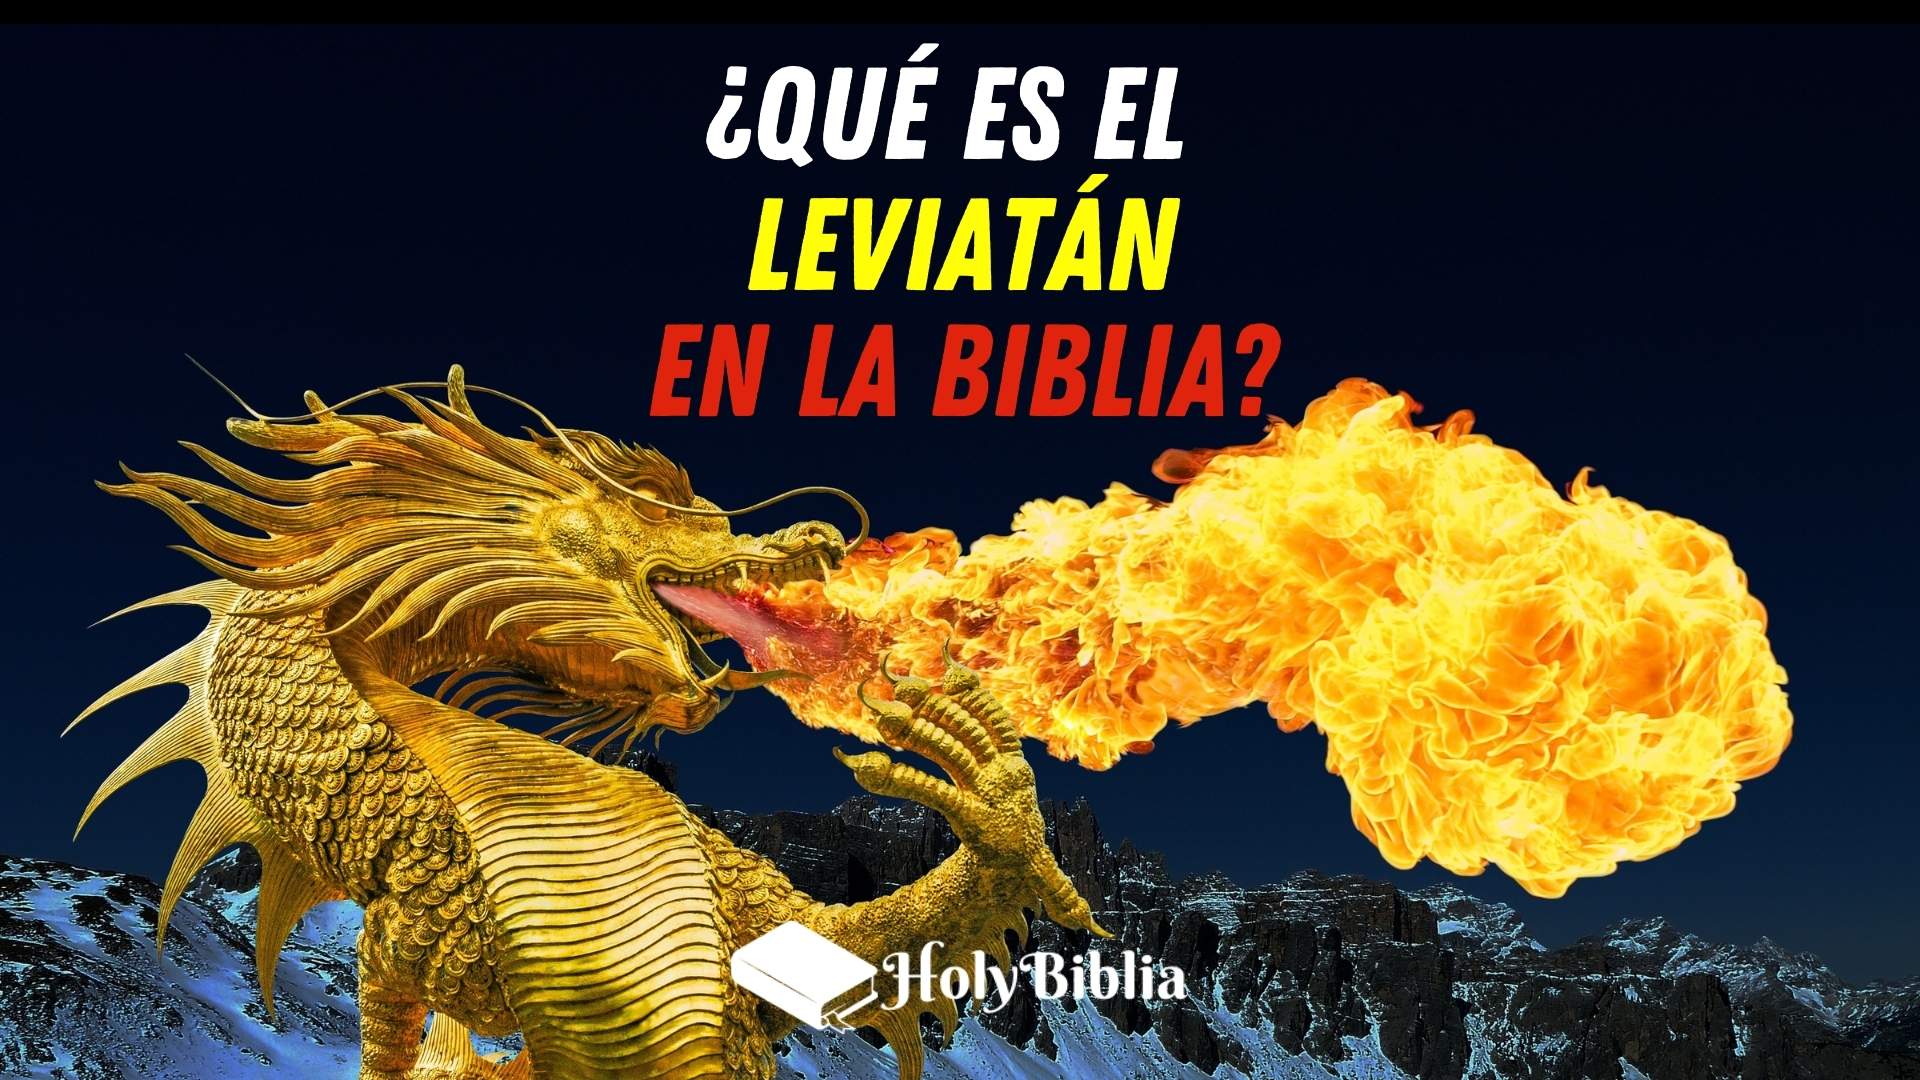 Qué es el leviatán cual es su significado en la Biblia